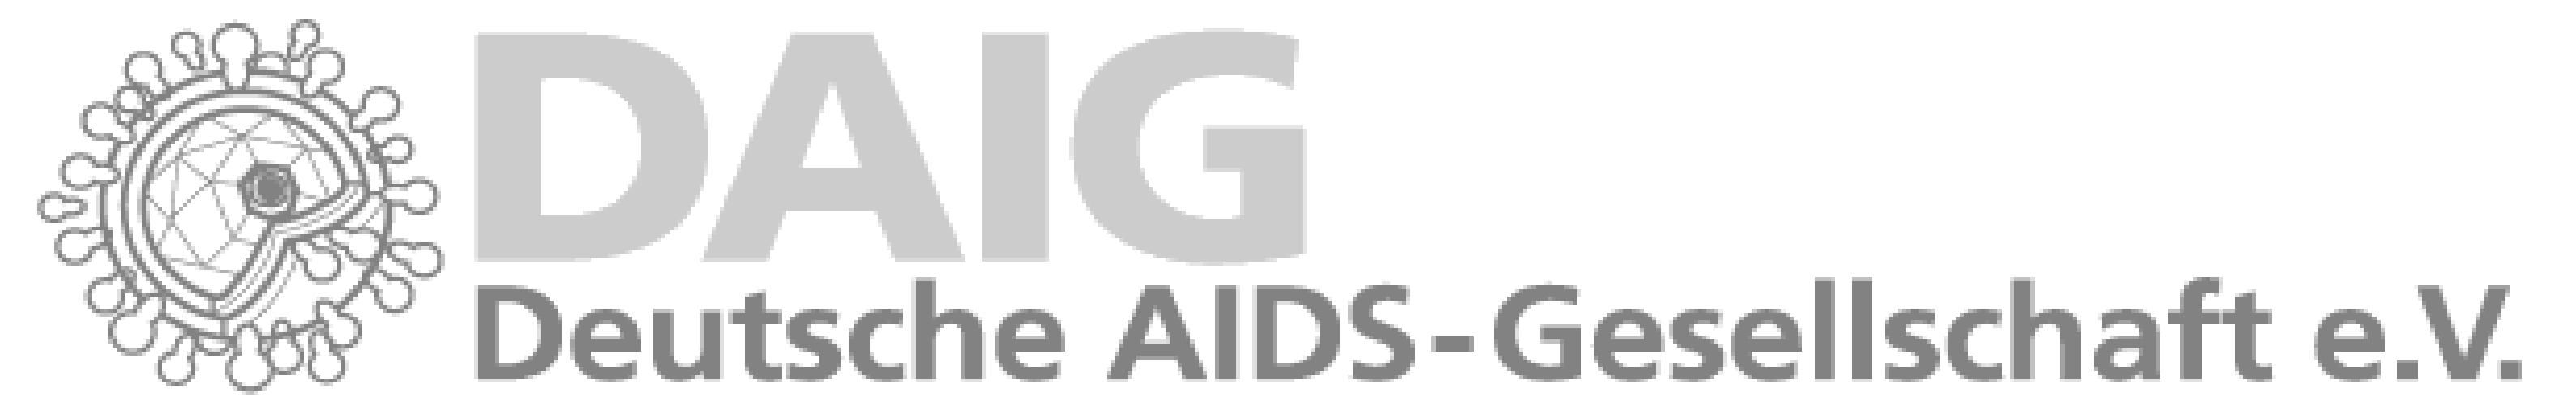 Deutsche AIDS-Gesellschaft e.V.